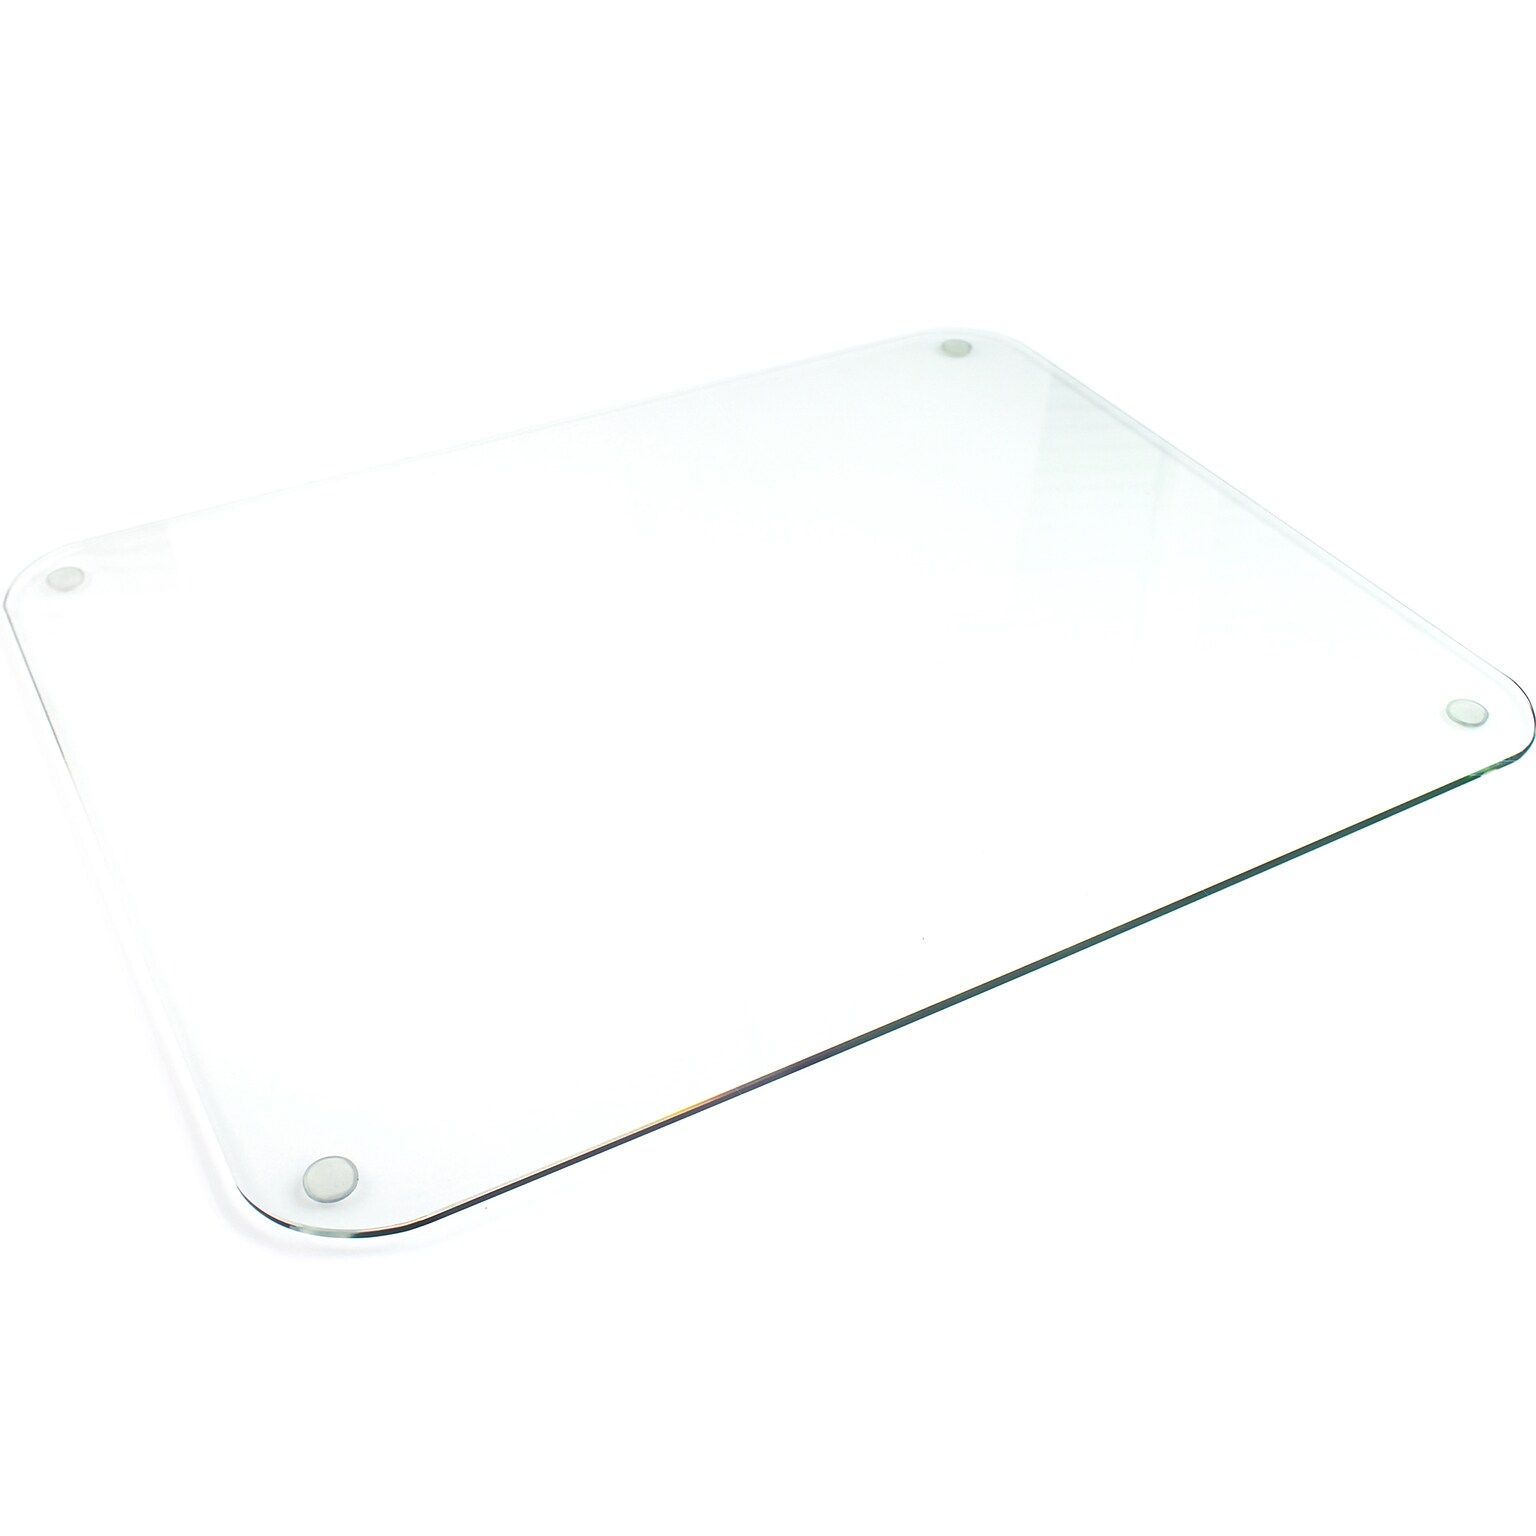 Desktex Glaciermat Anti-Slip Glass Desk Pad, 20 x 36, Clear (FCDE2036G)